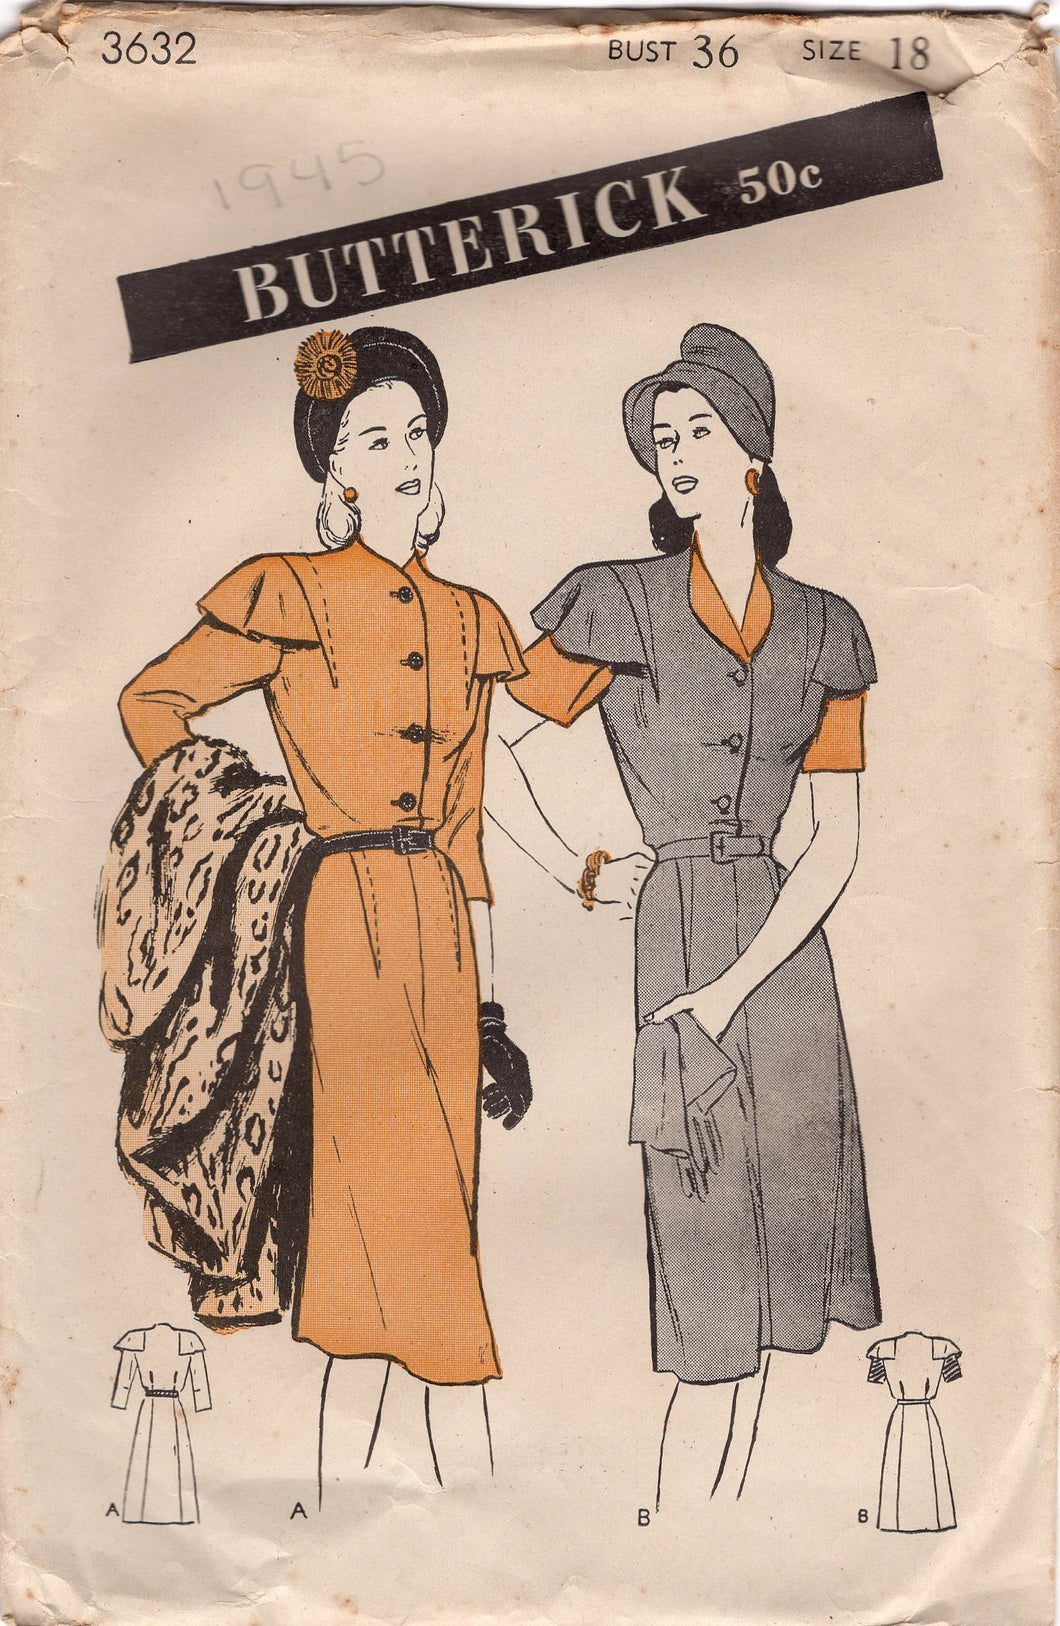 1940's Butterick One Piece Shirtwaist Dress with Cape Sleeve & Exterior darts - Bust 36